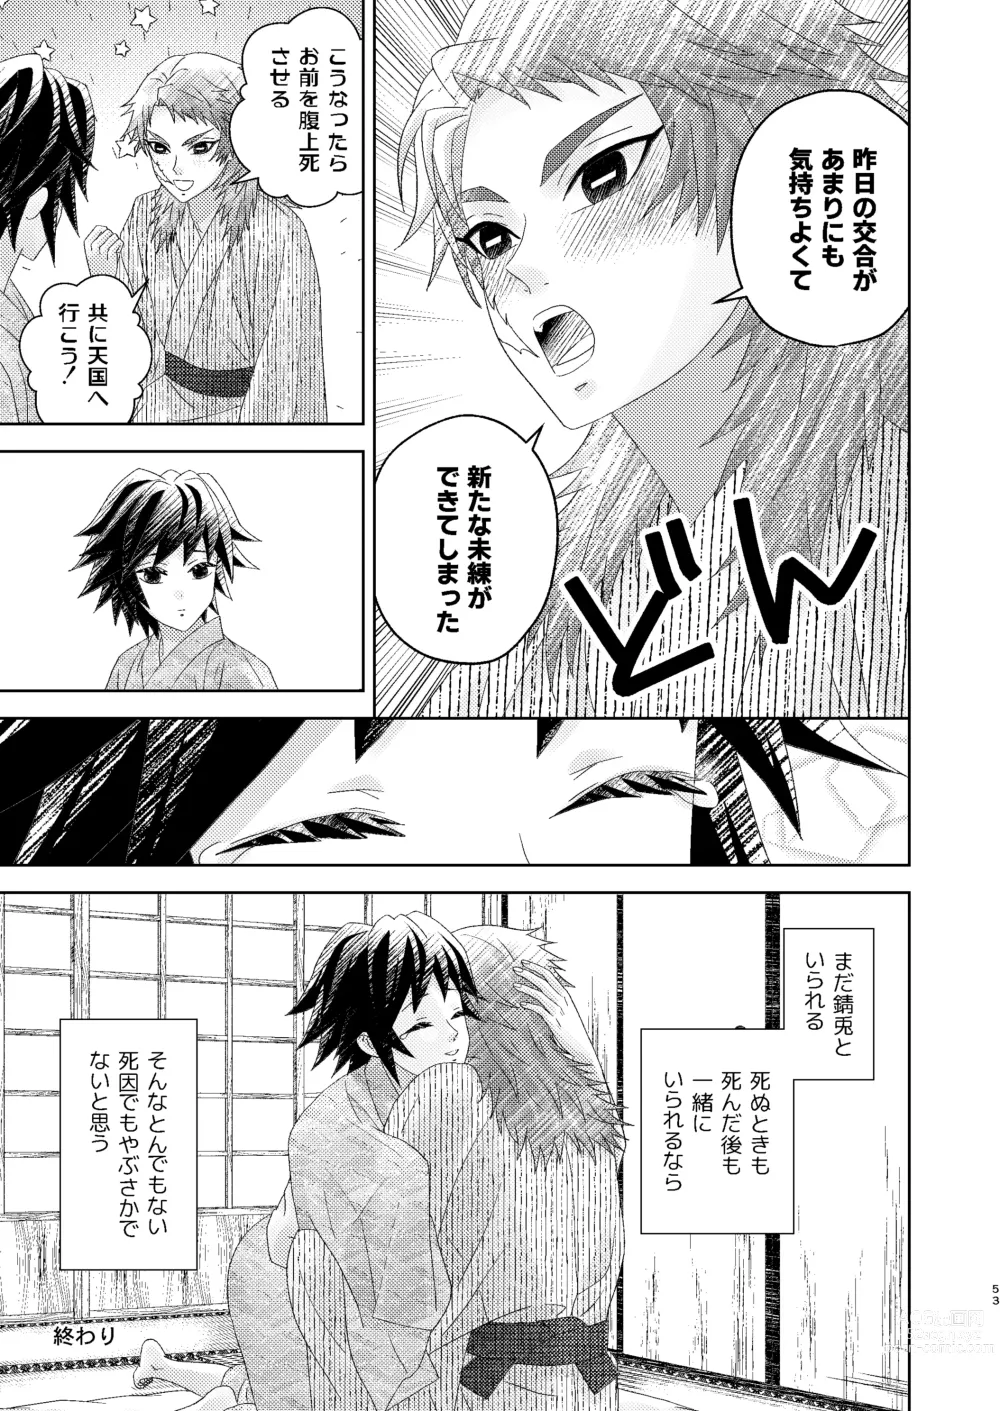 Page 52 of doujinshi Yuurei Kareshi no Koiwazurai